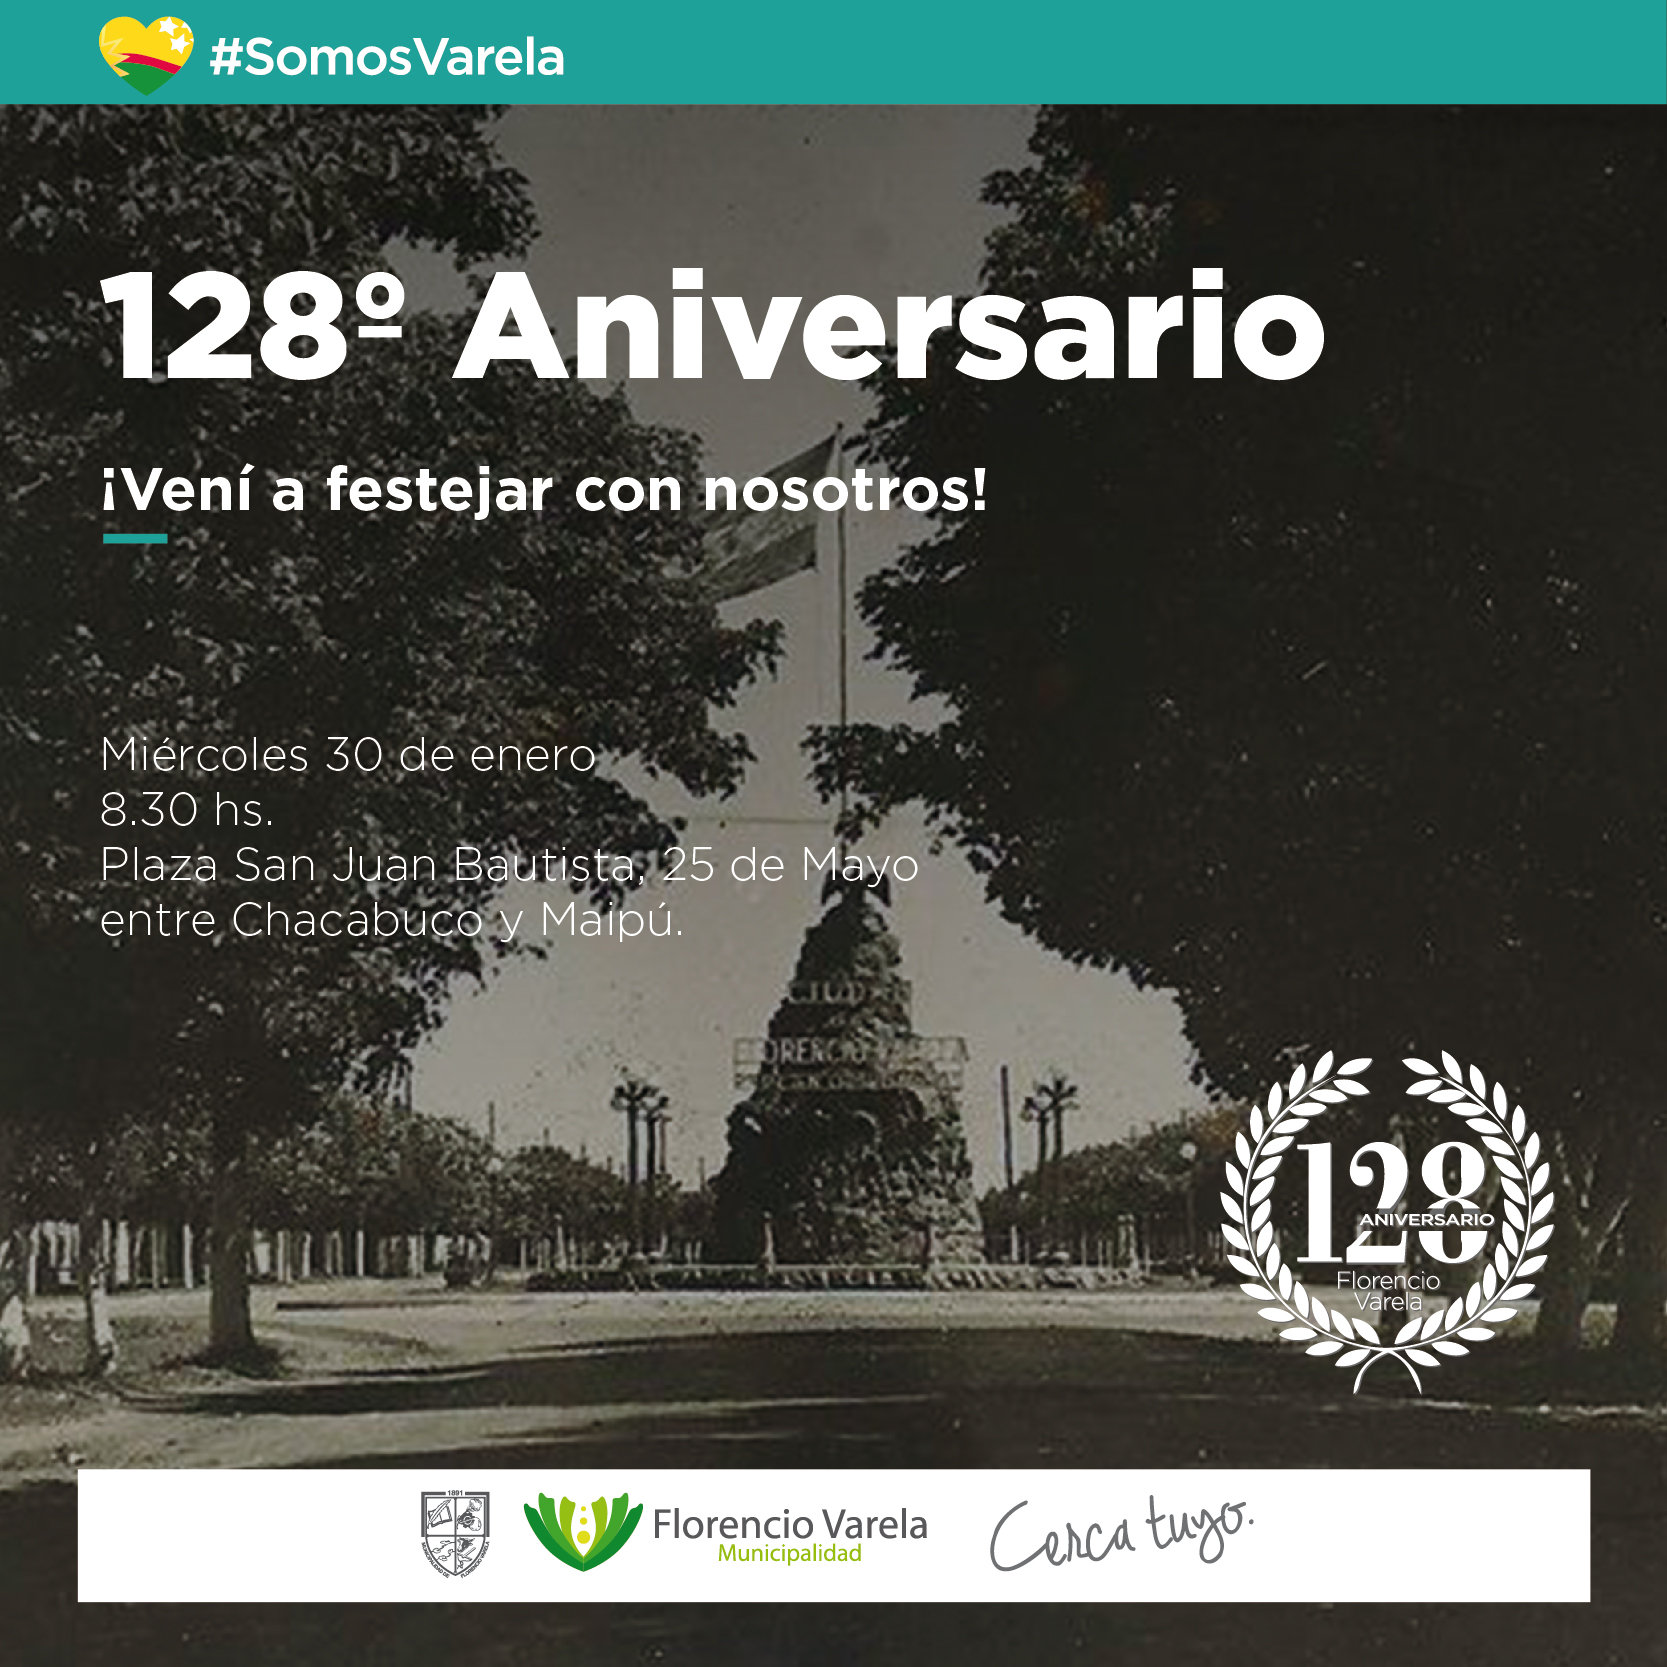  128° aniversario: ¡Celebremos juntos!